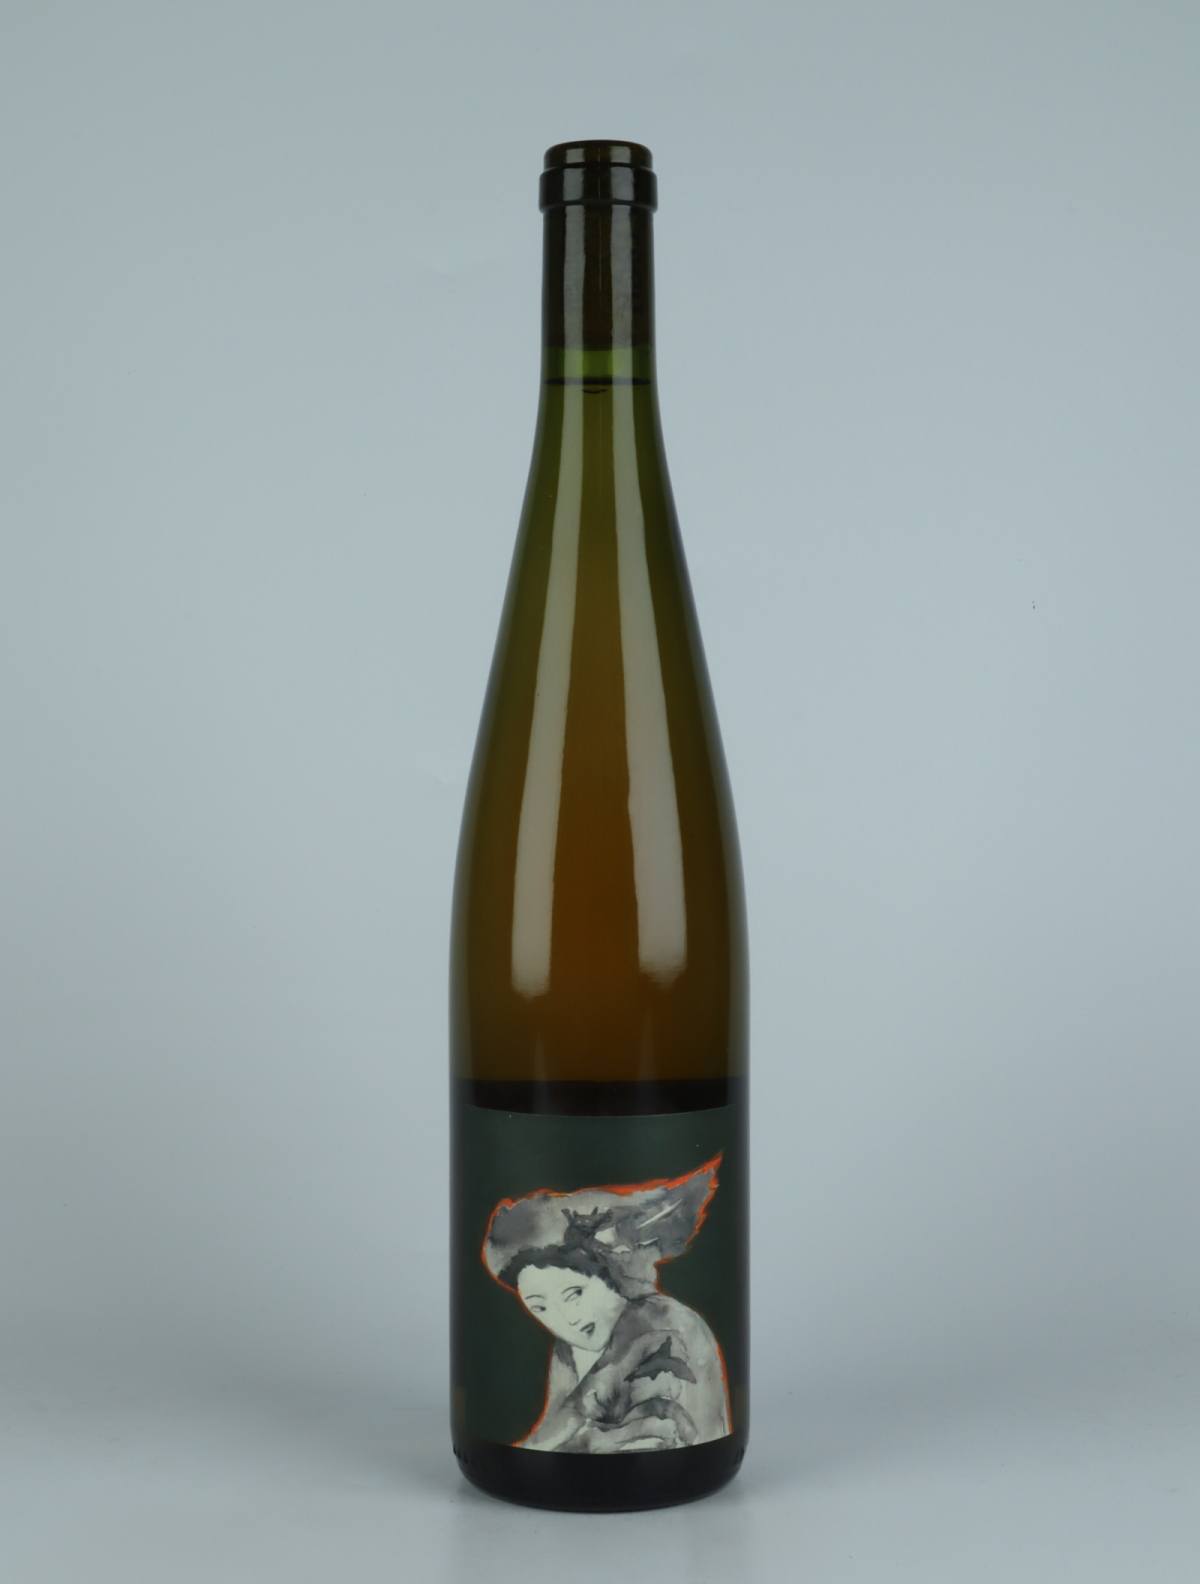 En flaske 2022 Demoiselle Orange vin fra Domaine Rietsch, Alsace i Frankrig